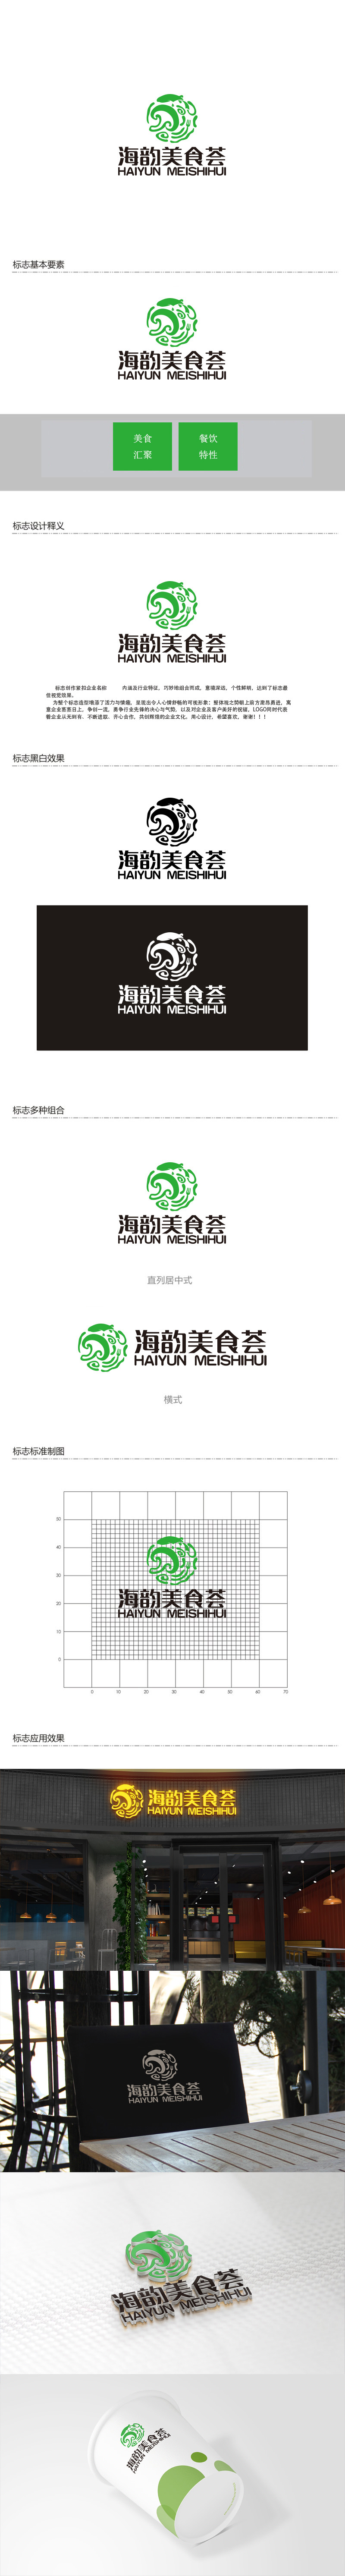 秦晓东的海韵美食荟logo设计